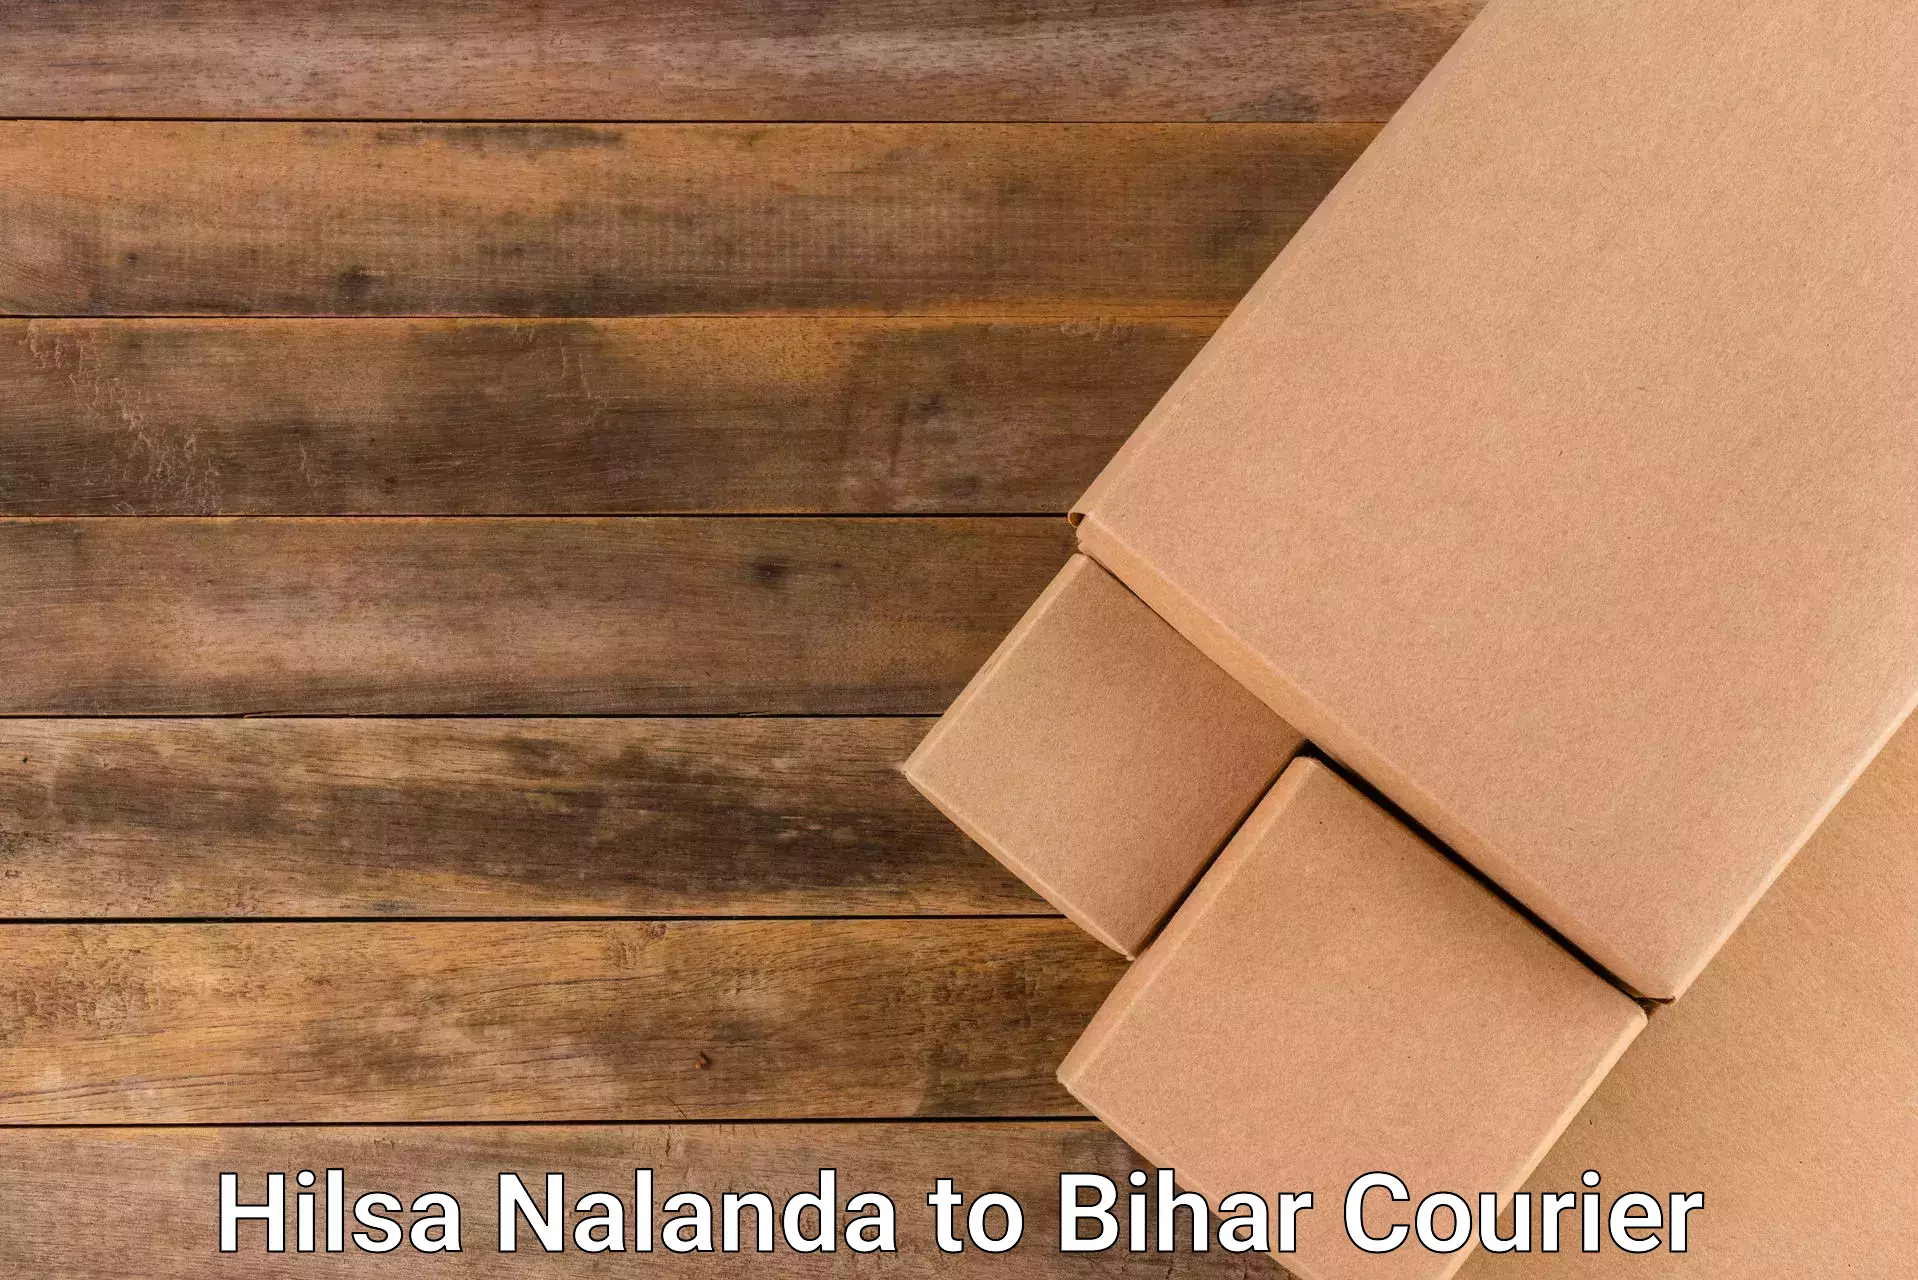 Regular parcel service Hilsa Nalanda to Bihar